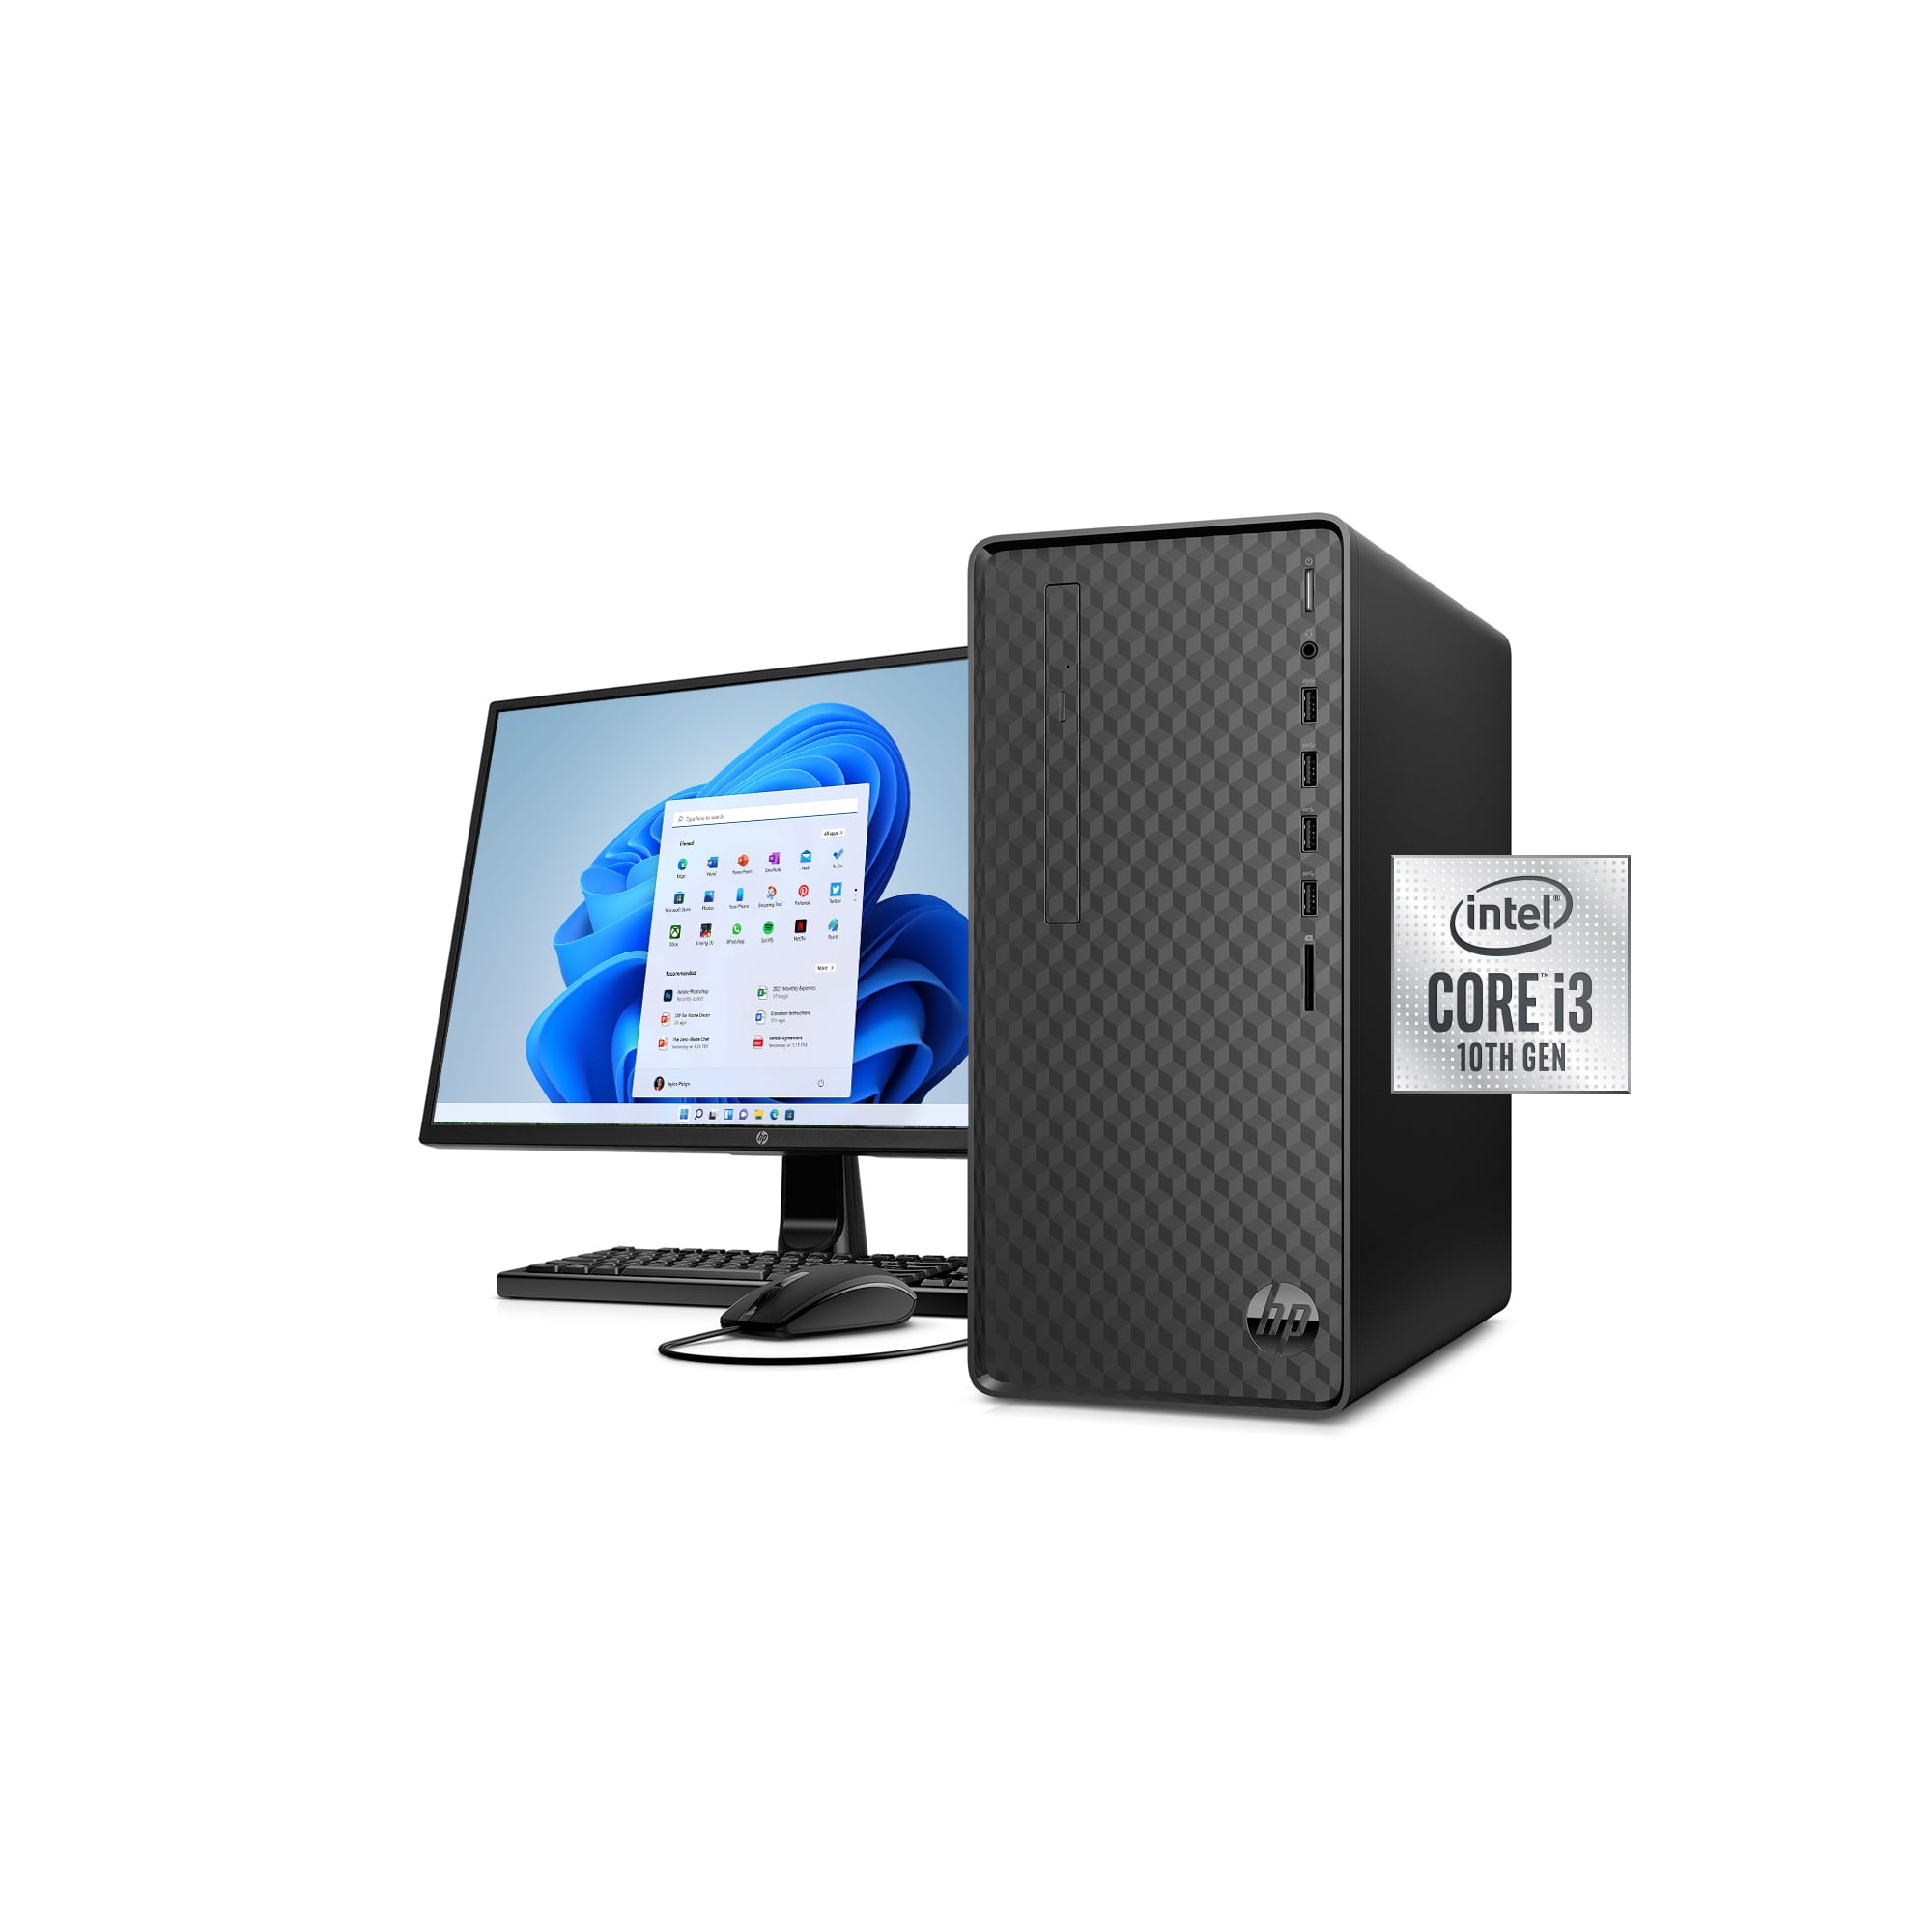 HP 110 Desktop, 20 Monitor and Printer Bundle